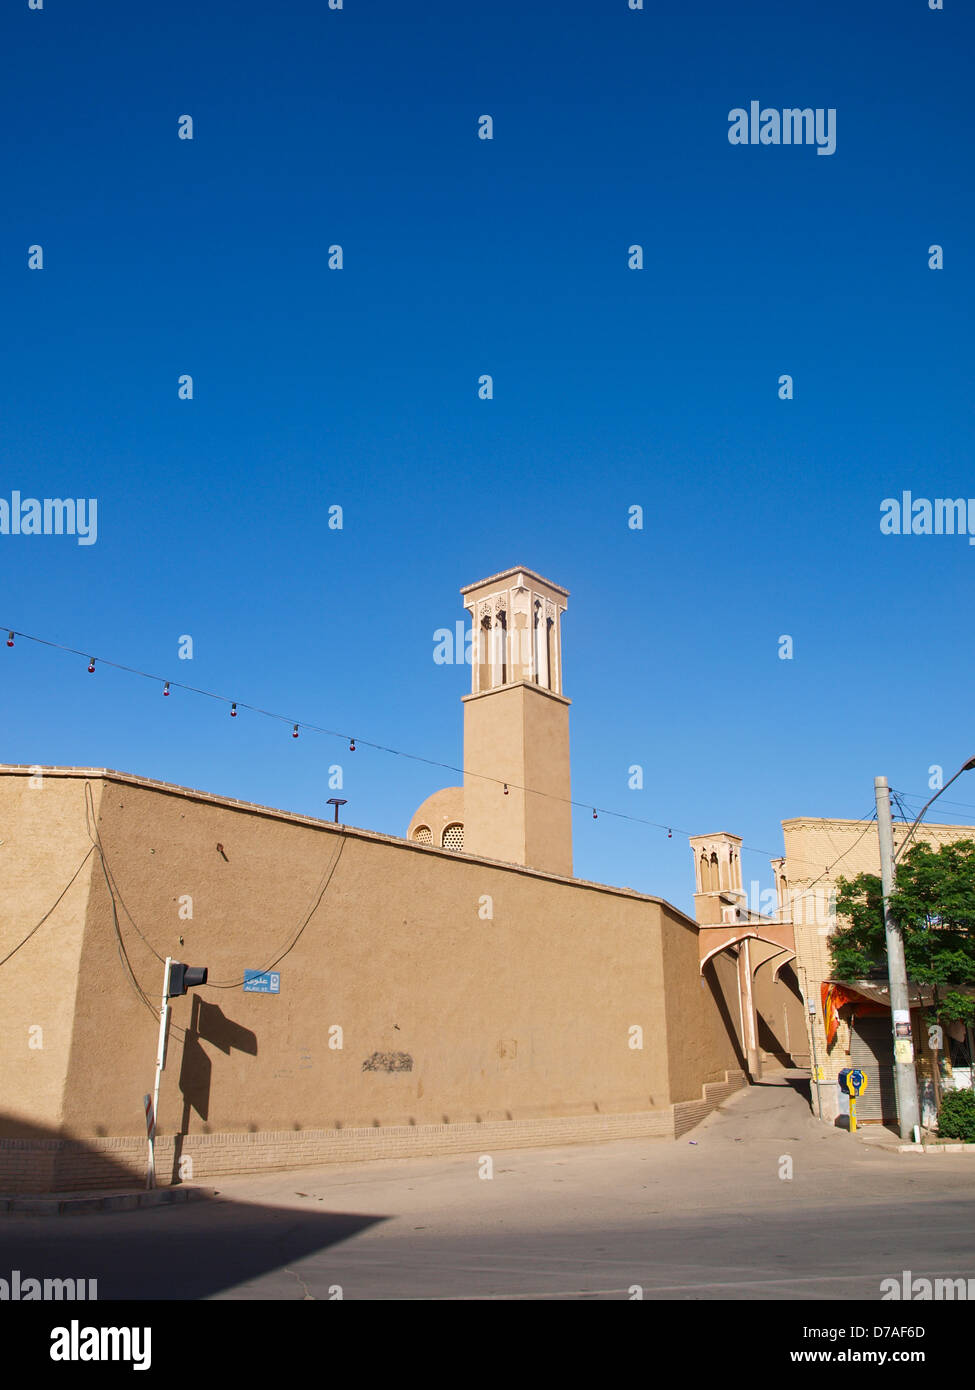 Une architecture d'adobe sur Alvavi rue sur ciel bleu à Kashan Iran Banque D'Images